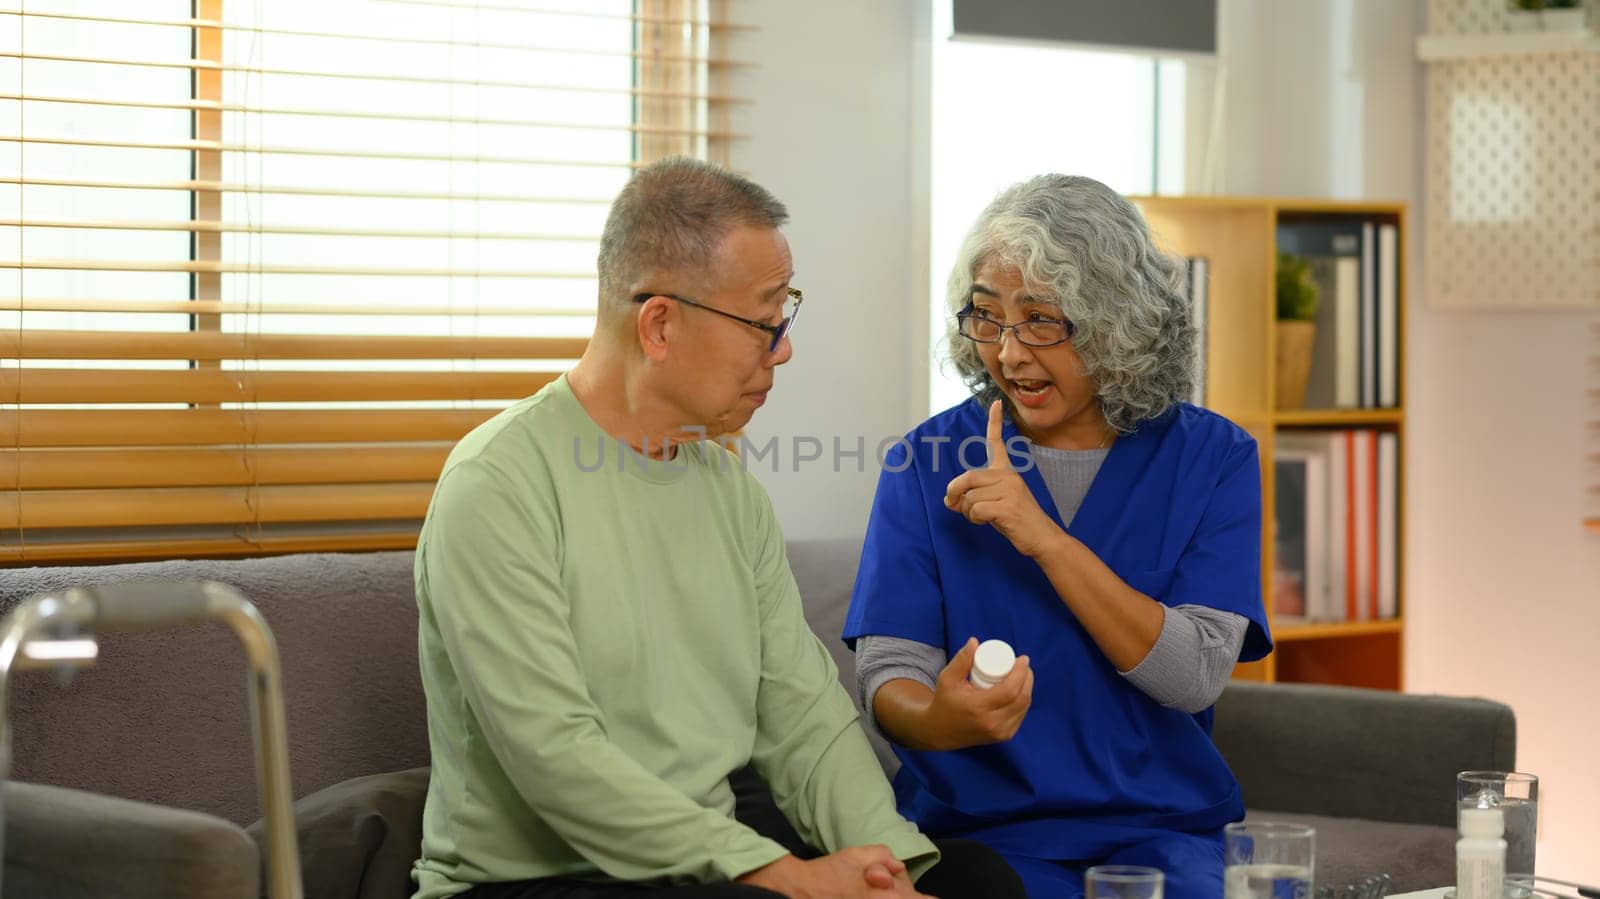 Smiling female general practitioner explaining medicine dosage to senior patient during home visit.